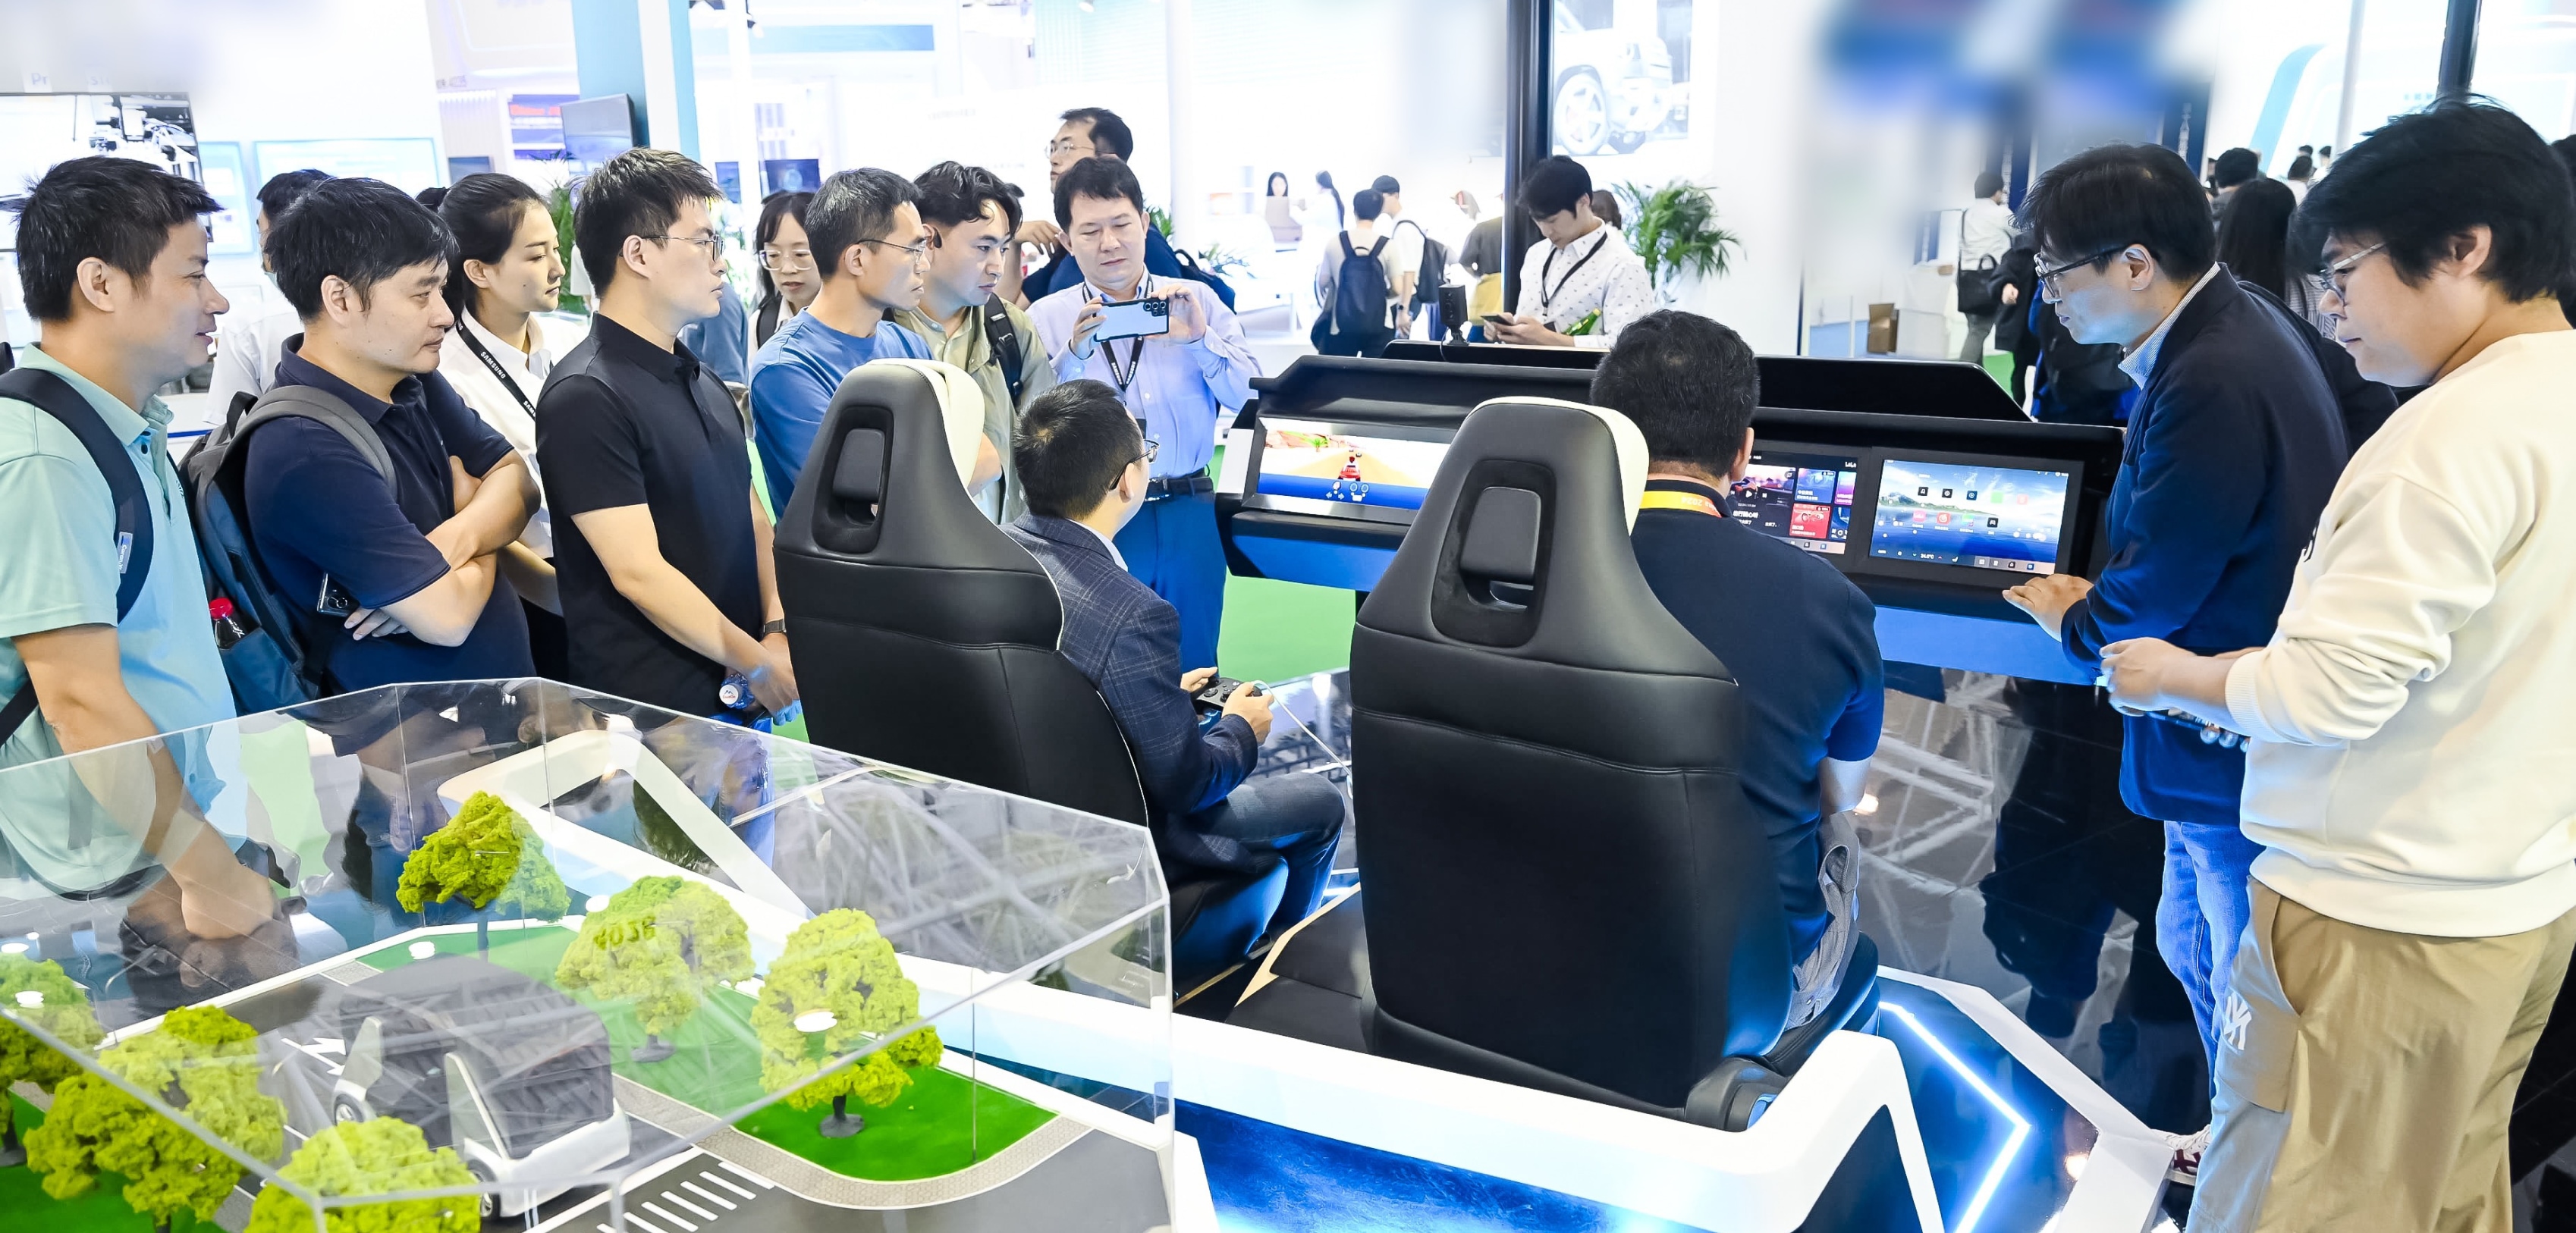 一群人正在展位上与汽车仿真设备互动，包括汽车座椅和仪表盘屏幕，展位上有一个微型道路和汽车模型。